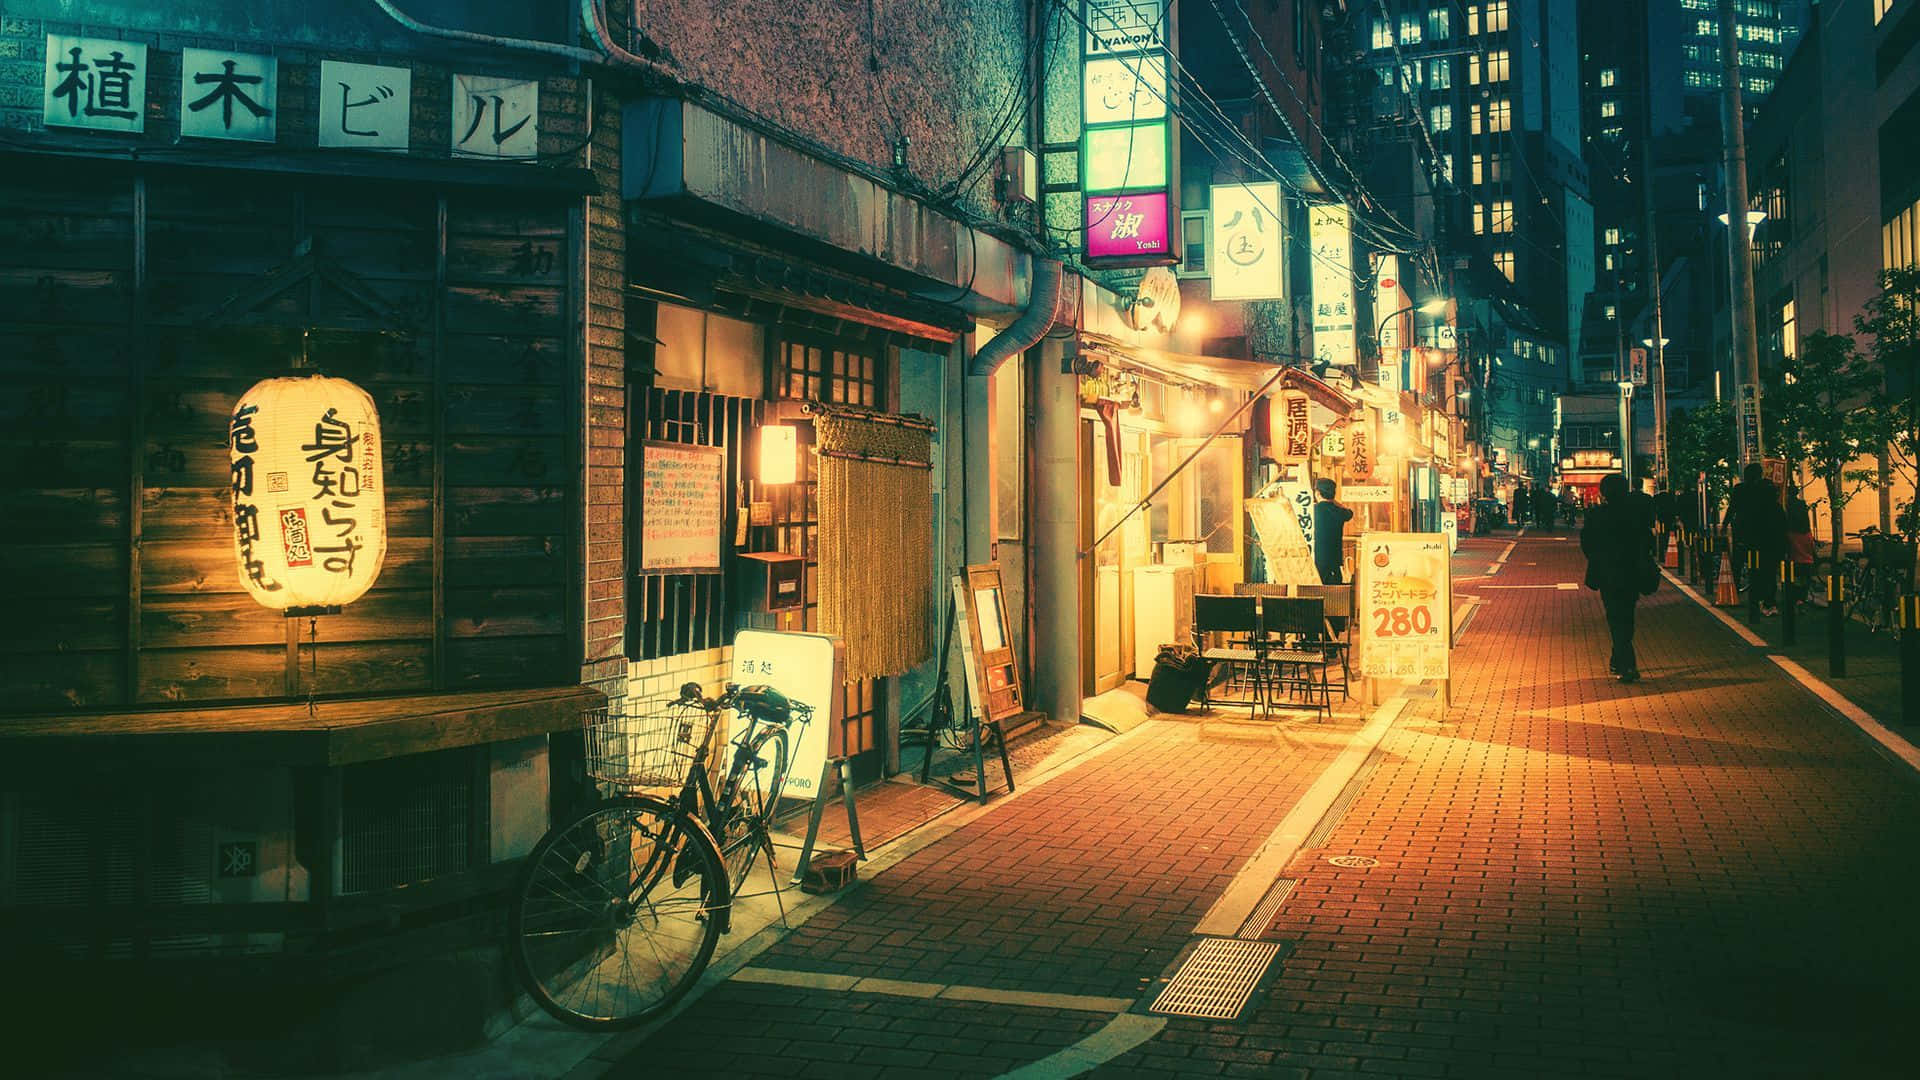 Fondode Pantalla De Tokio Con Acera En Una Calle De Tokio